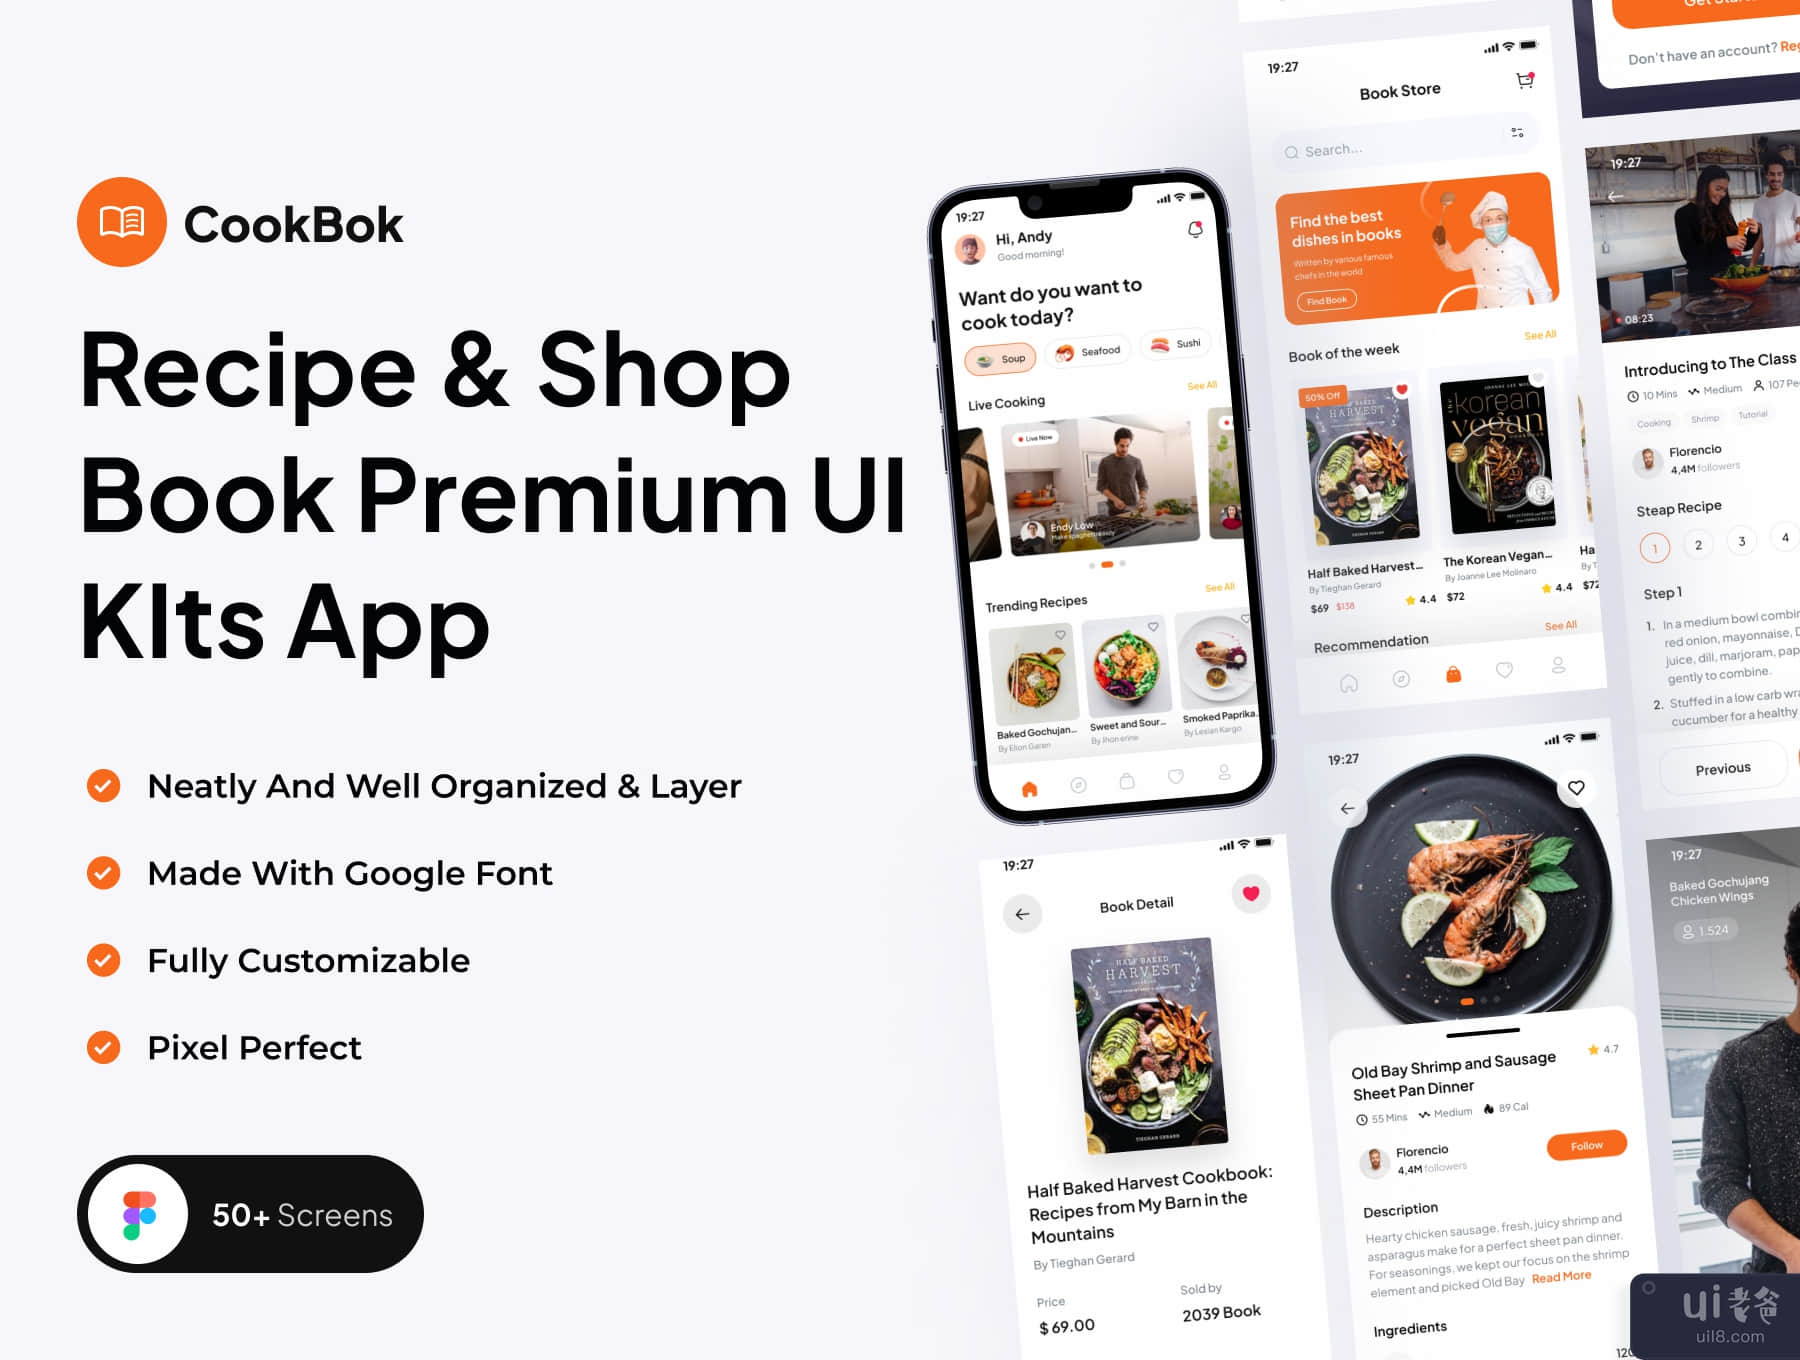 CookBok - 食谱和图书商店高级用户界面 KIts 应用程序 (CookBok - Recipe & Book Store Premium UI KIts App)插图5